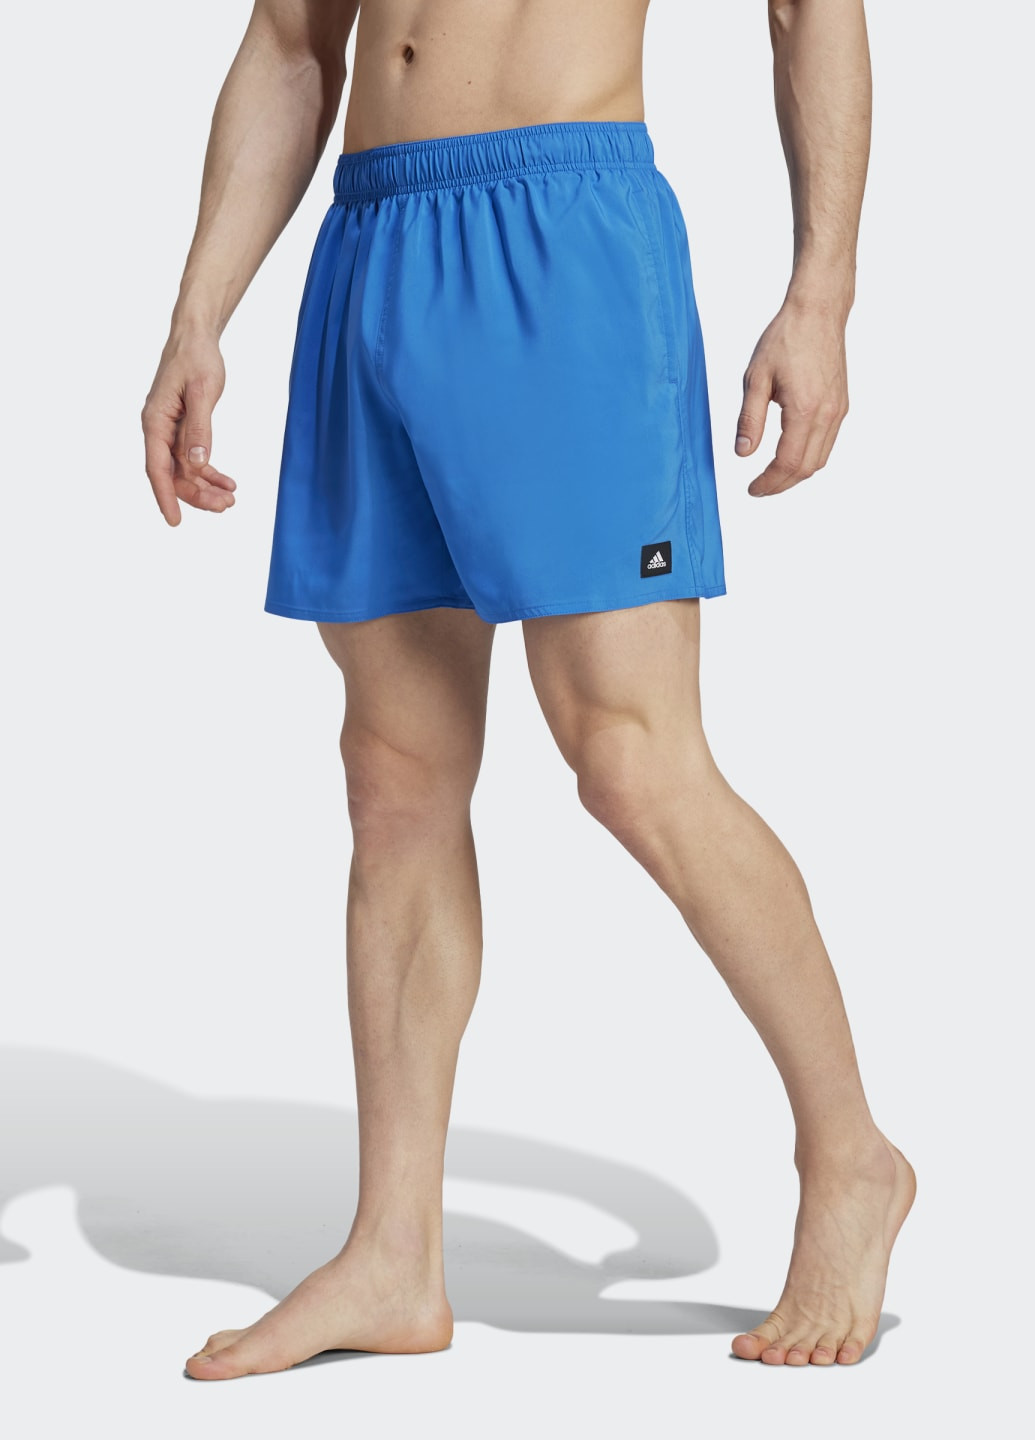 Мужские синие спортивные плавательные шорты solid clx short-length adidas